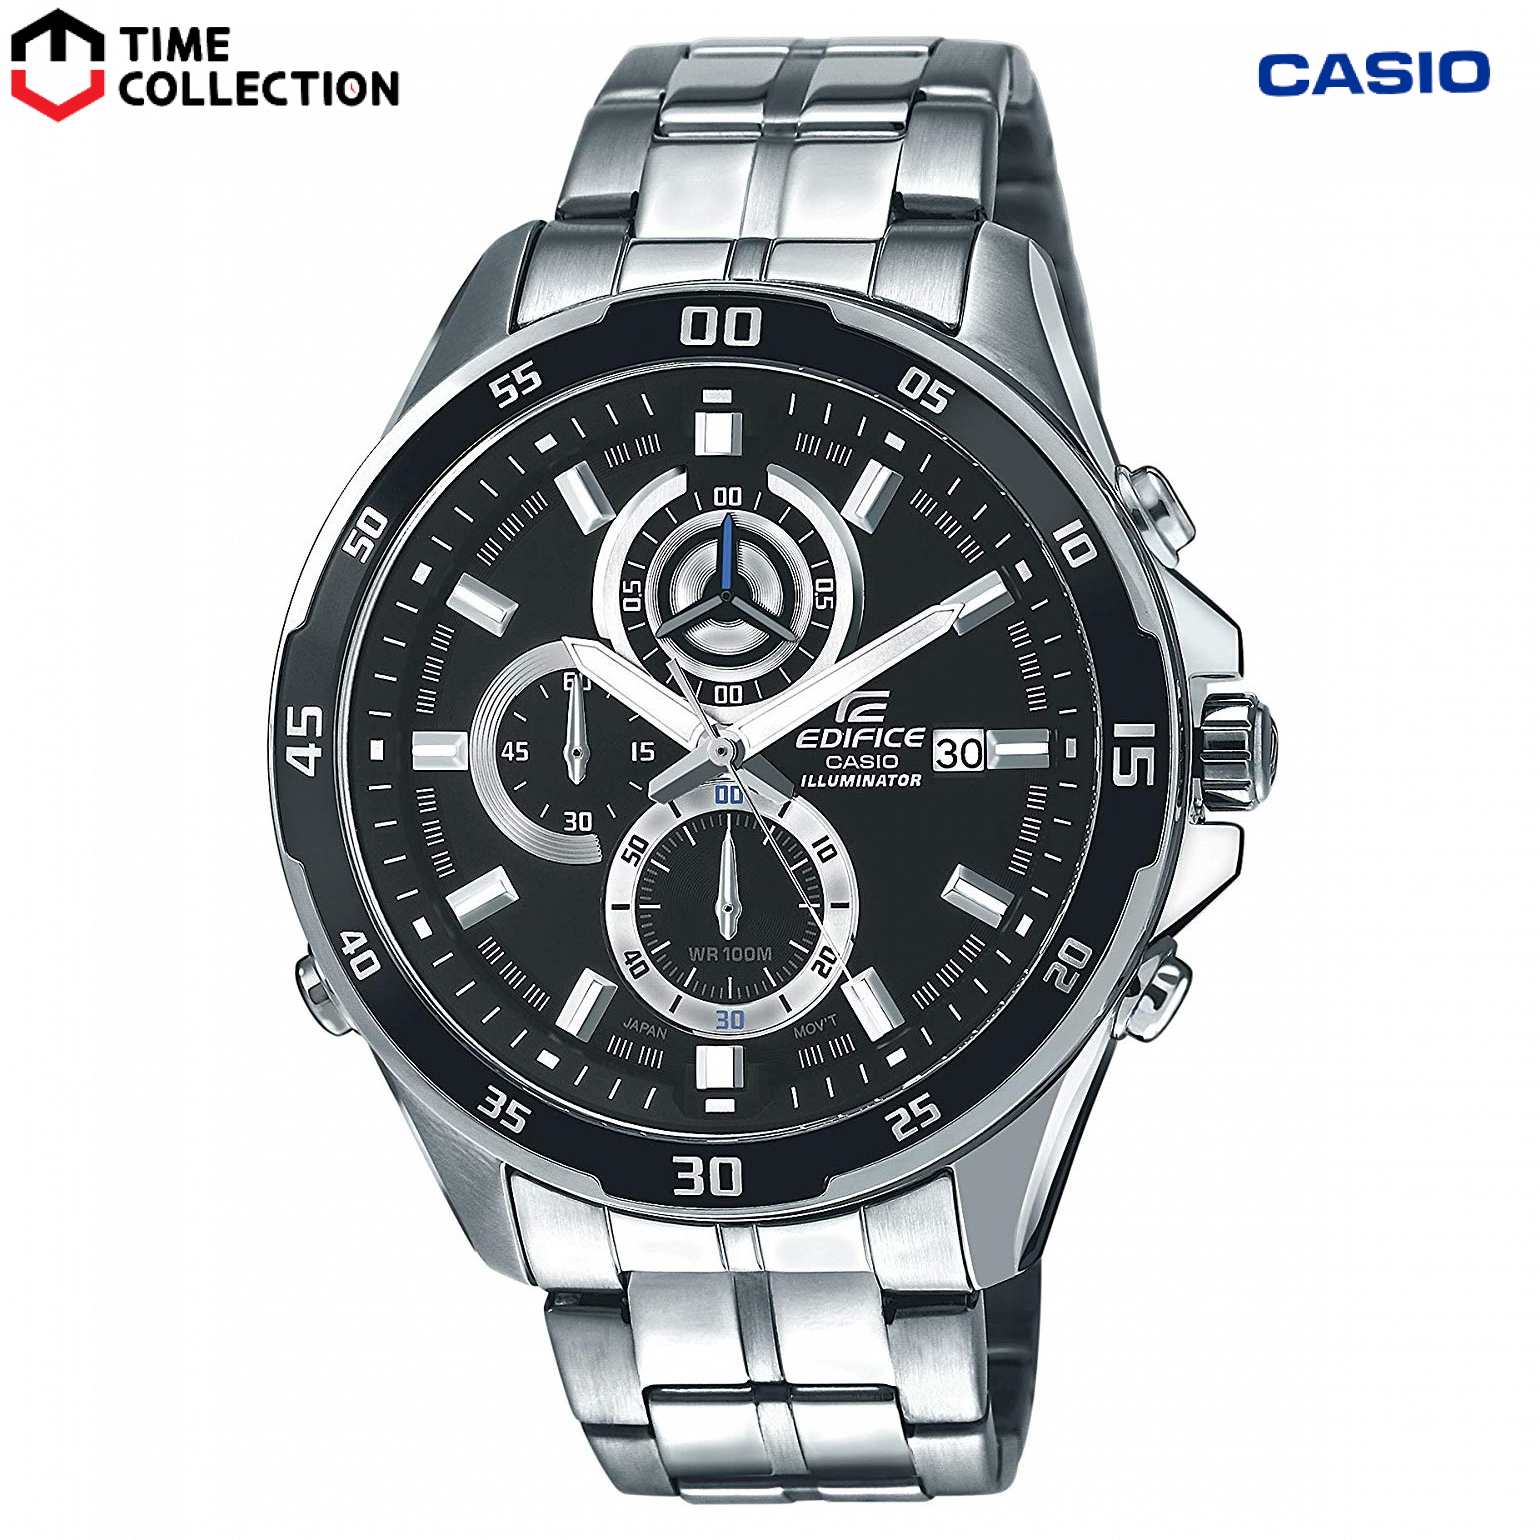 Casio Edifice Chronograph Watch EFR-547D-1A w/ 1 Year Warranty